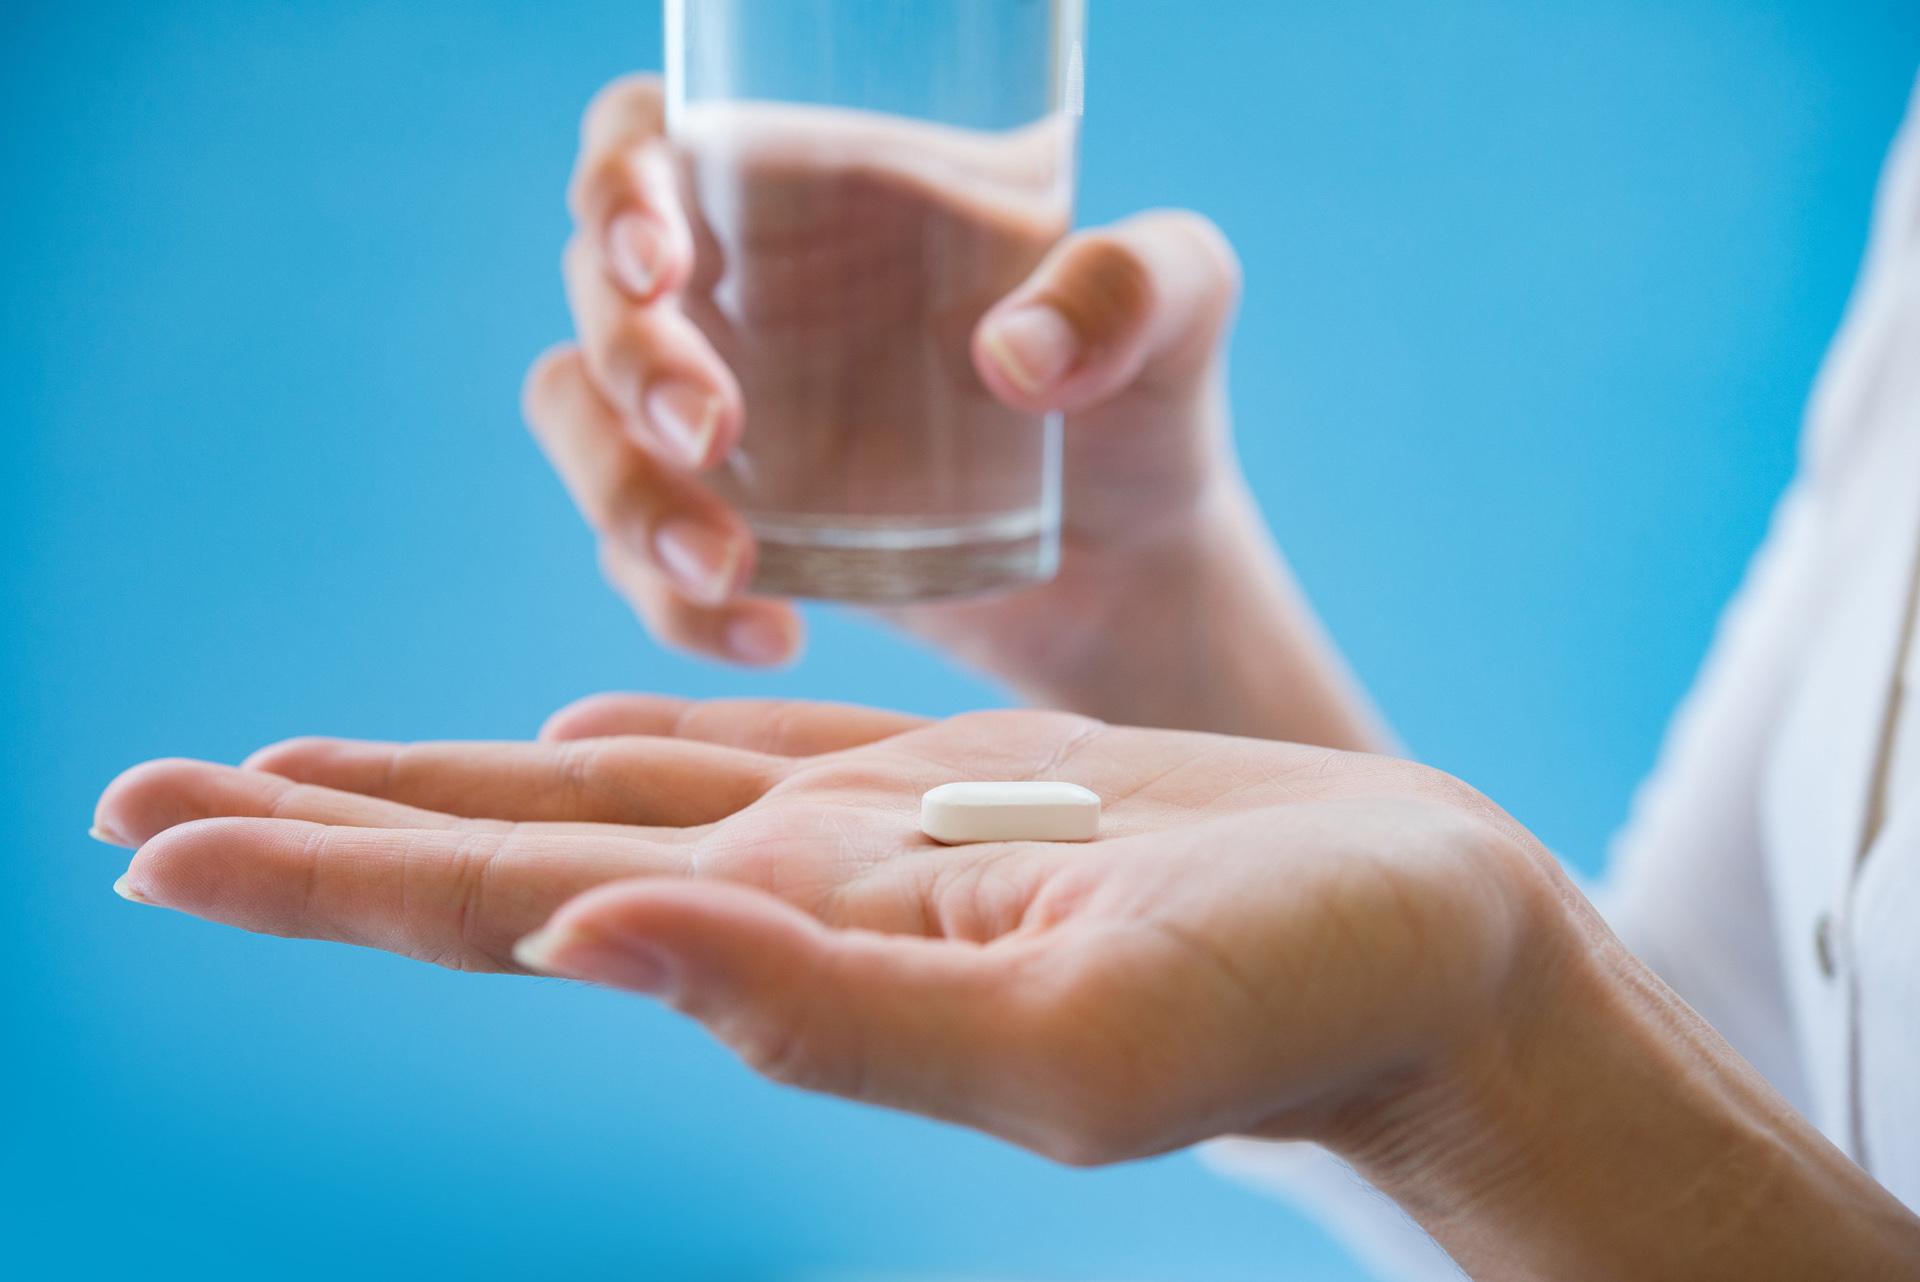 आढावा Aspirin Tablet (आस्पिरिन) उपचारासाठी सुचविलेले आहे फायदे, उपयोग, साइड इफेक्ट्स, खबरदारी, वापर